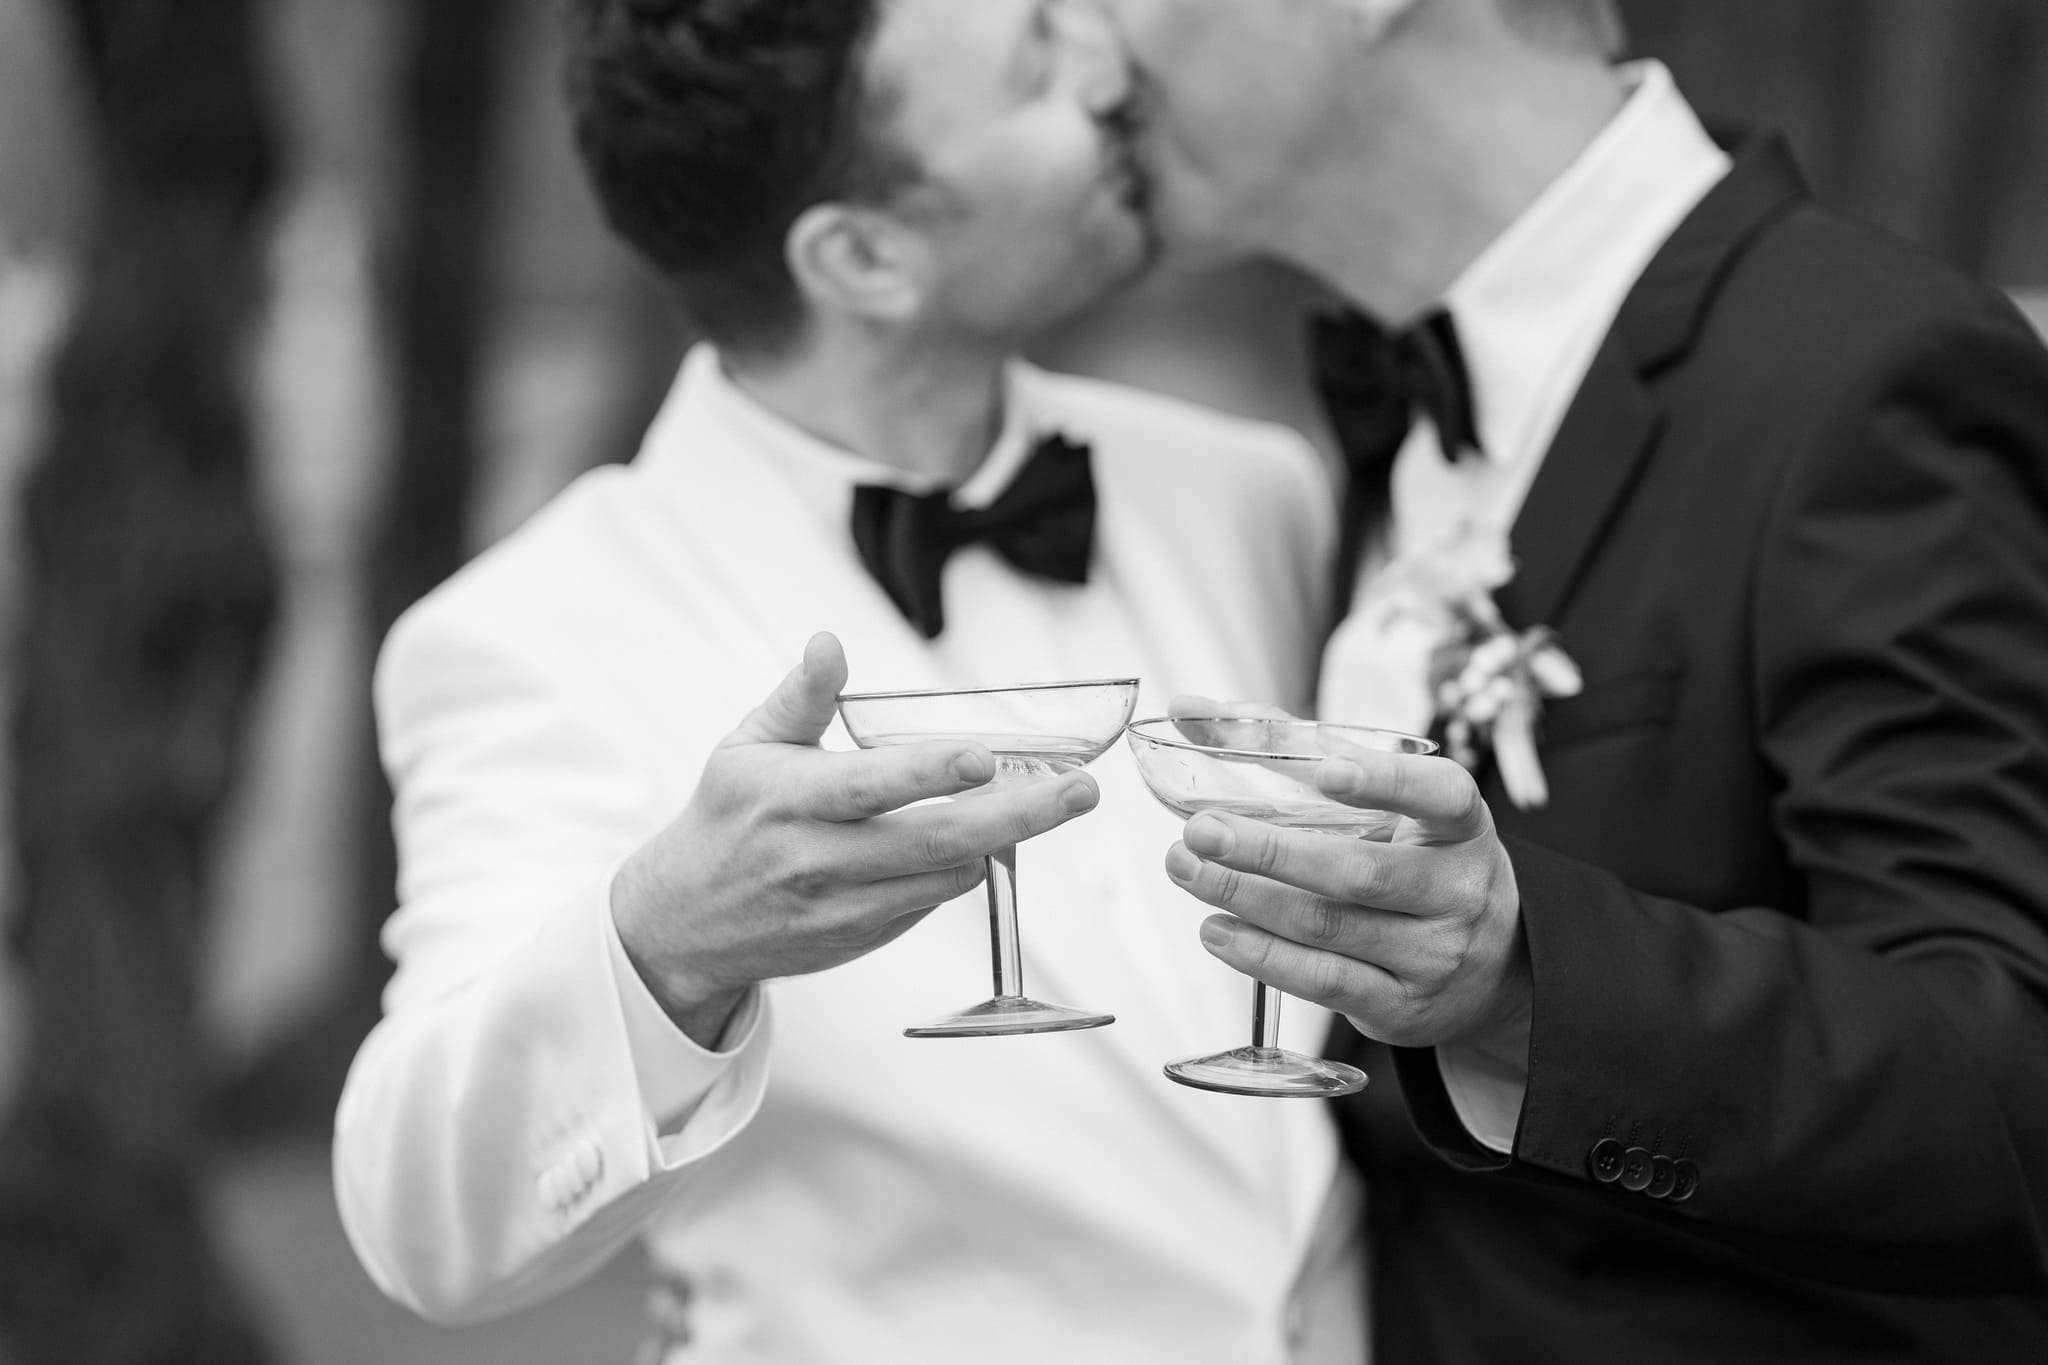 Zwei Bräutigame stoßen auf ihrer Hochzeit mit Martini-Gläsern an, während sie sich einen liebevollen Kuss geben, festgehalten in einem stilvollen Schwarz-Weiß-Foto.